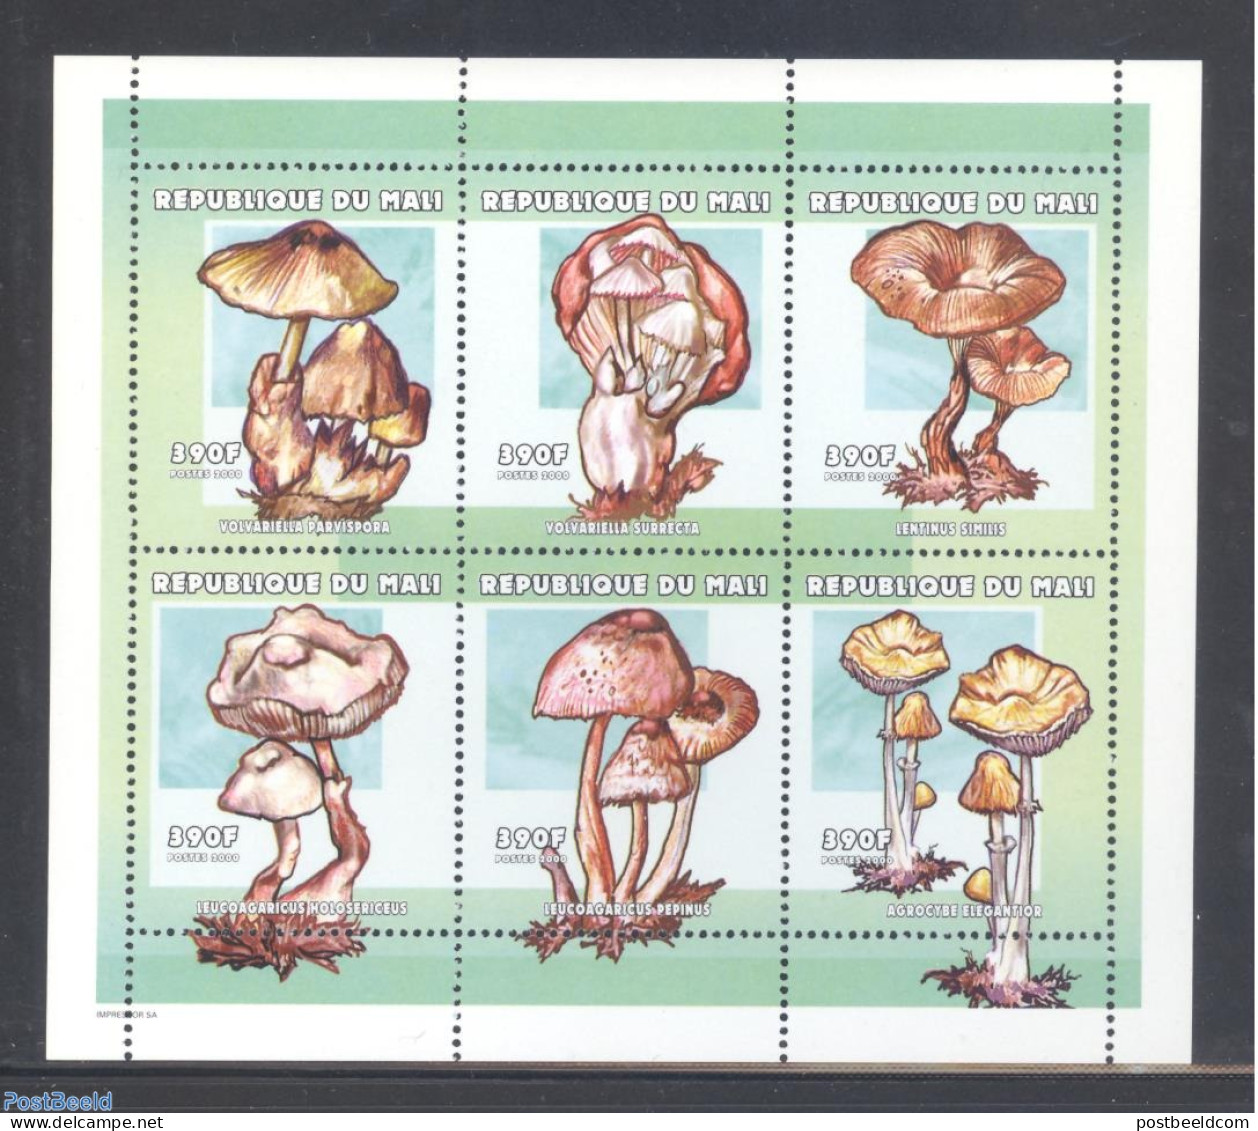 Mali 2000 Mushrooms 6v M/s (6x390F), Mint NH, Nature - Mushrooms - Funghi